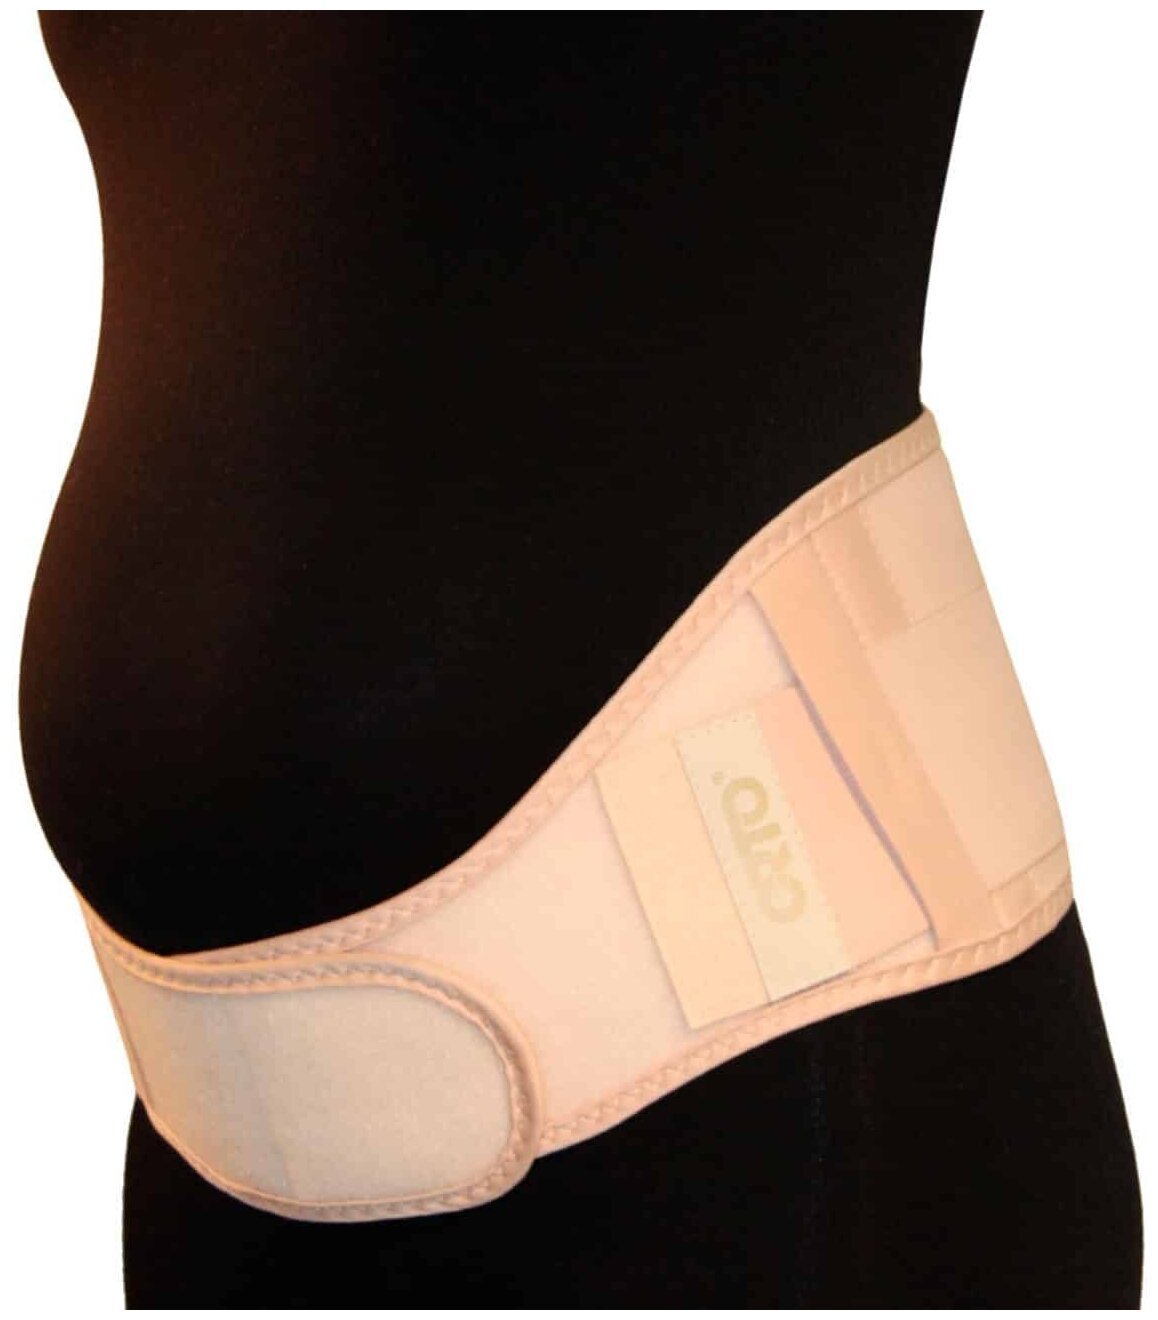 Бандаж для беременных до и послеродовый БД 111 Orto цвет Бежевый, размер: L